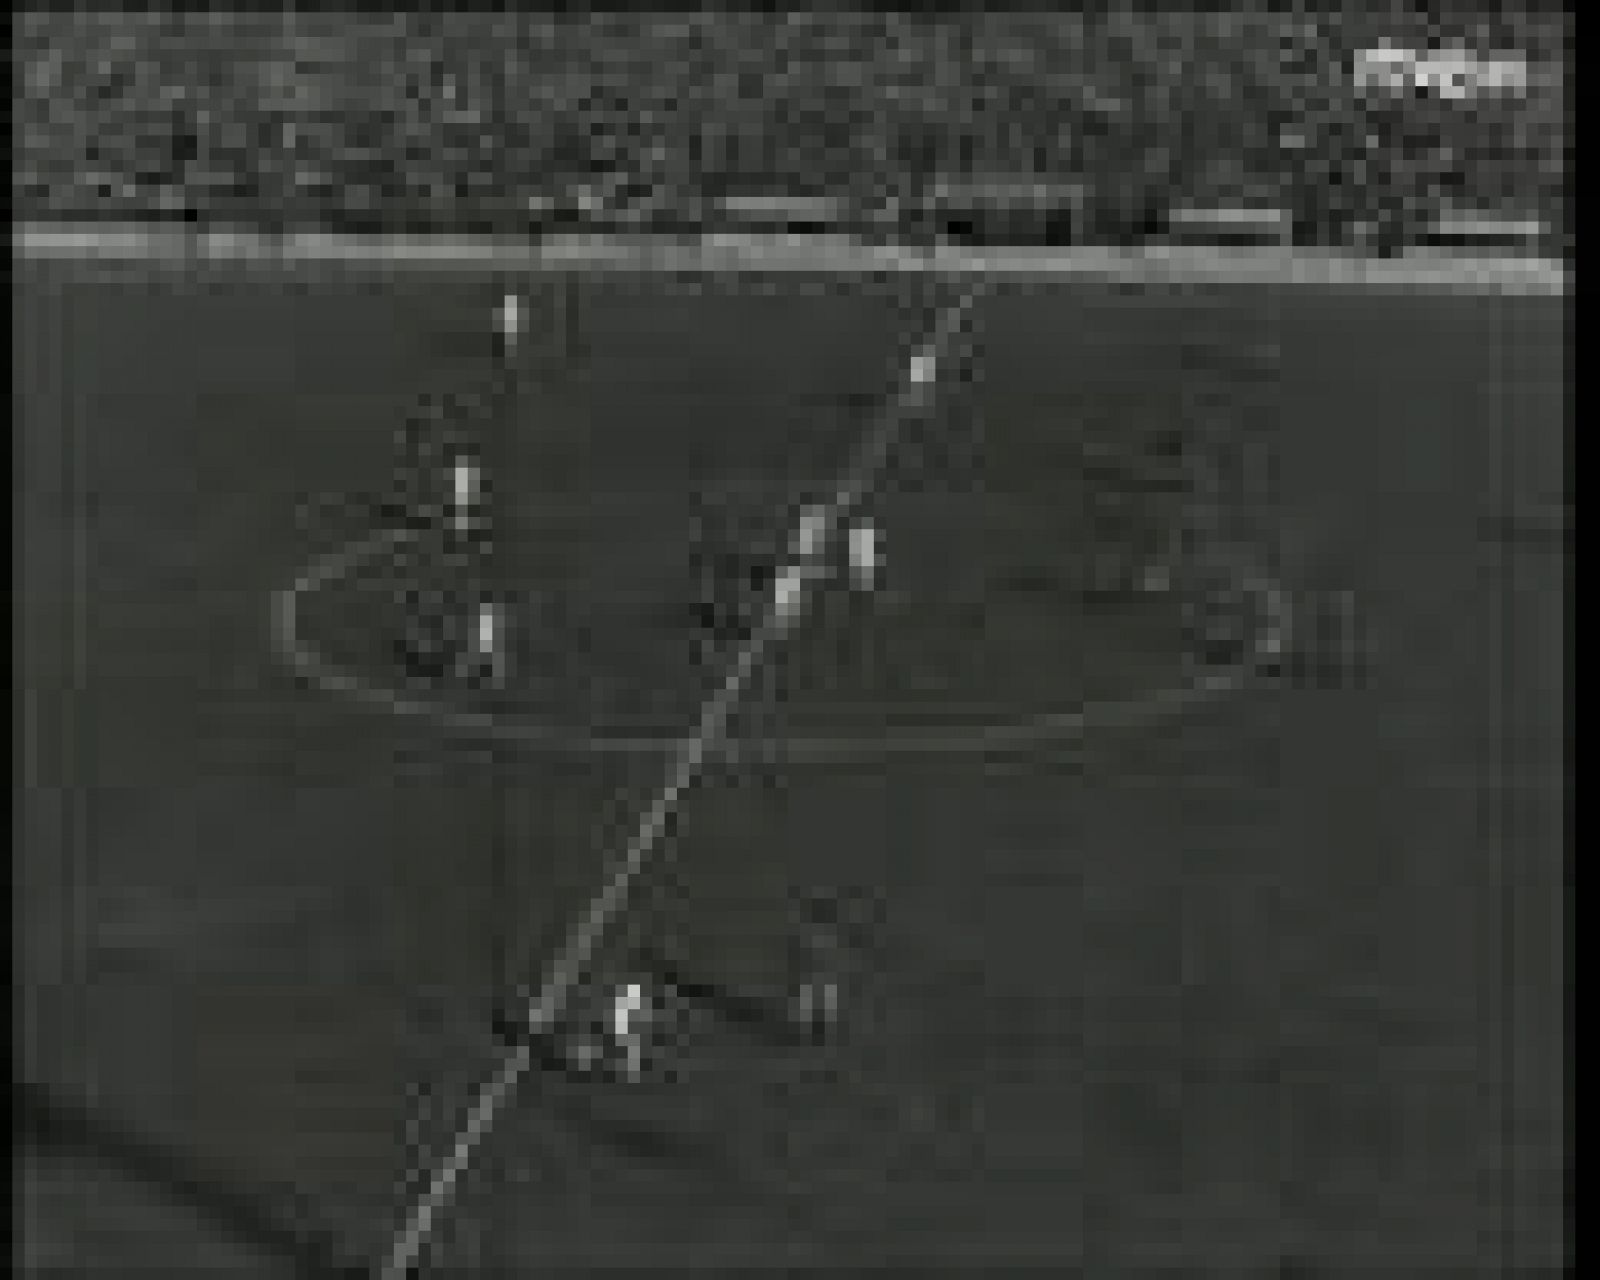  En 1959, la primera trasmisión desde Madrid a Barcelona: el partido más importante de la liga